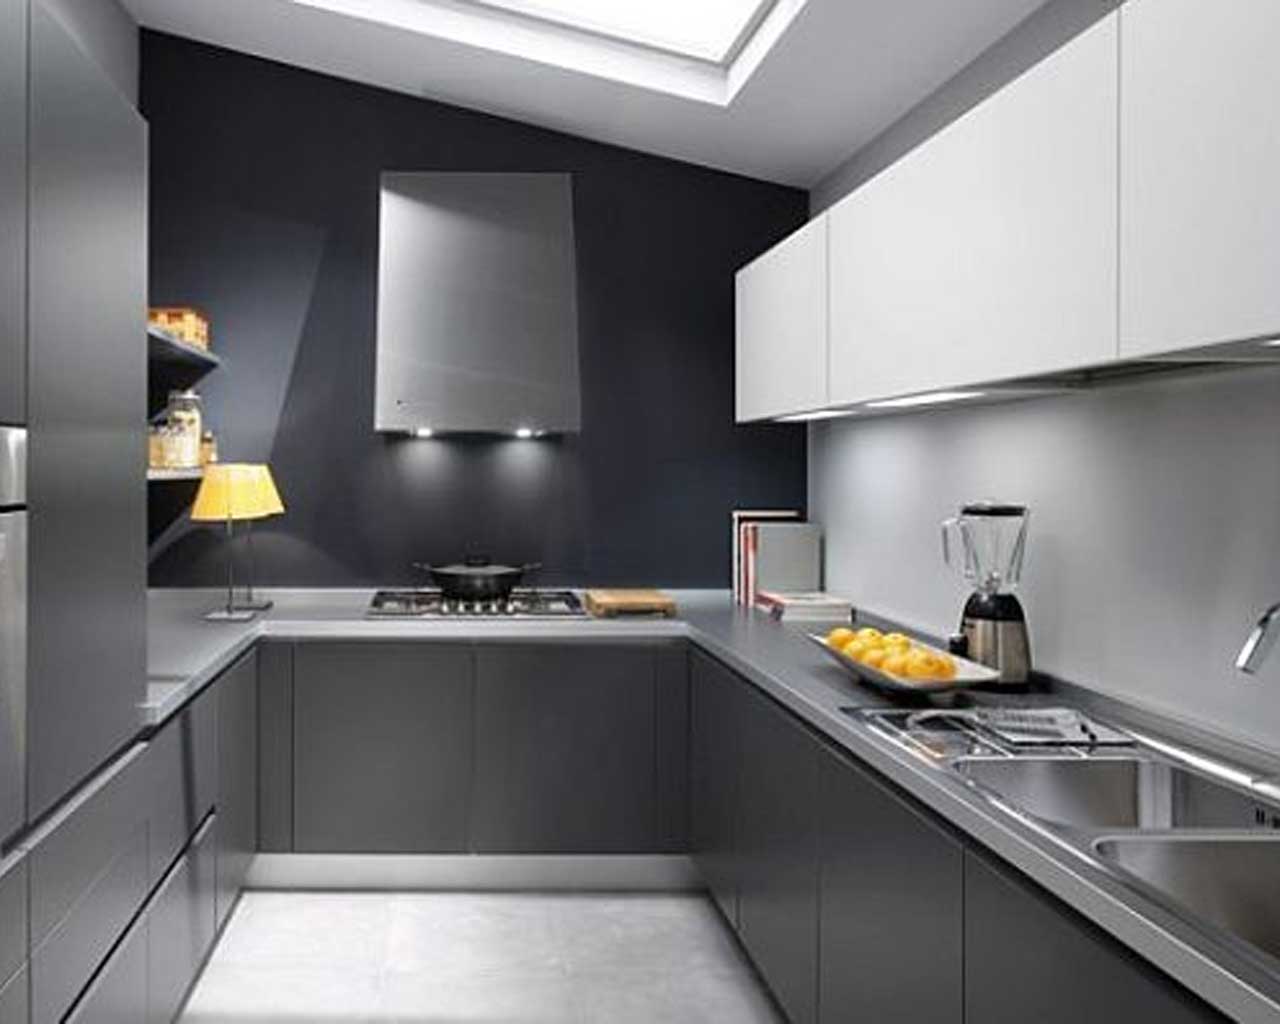 Desain Dapur Minimalist Biru Bentuk U Untuk Ruang Sempit Desain